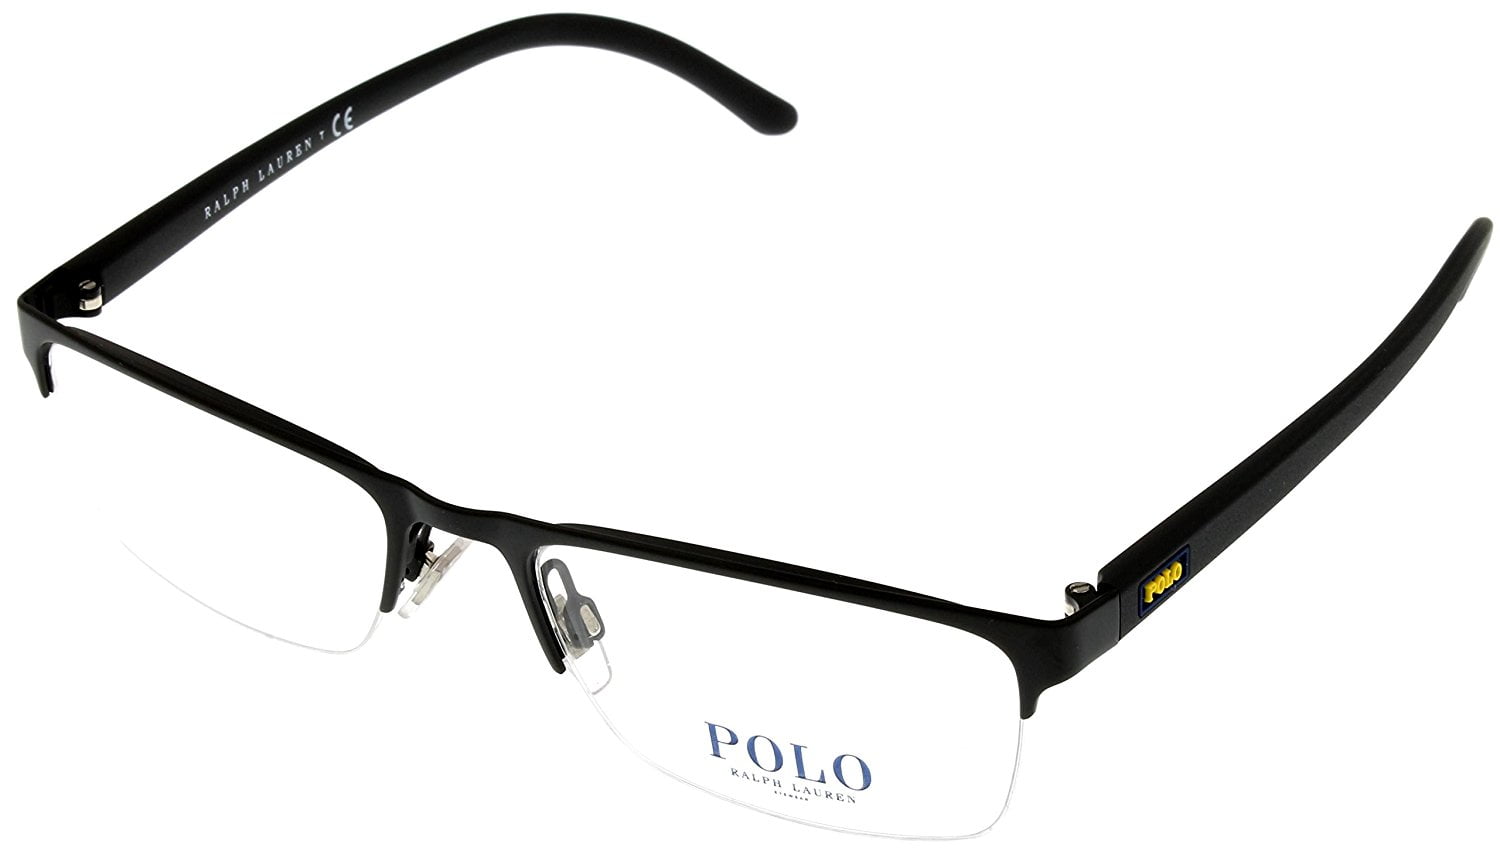 polo rimless eyeglasses